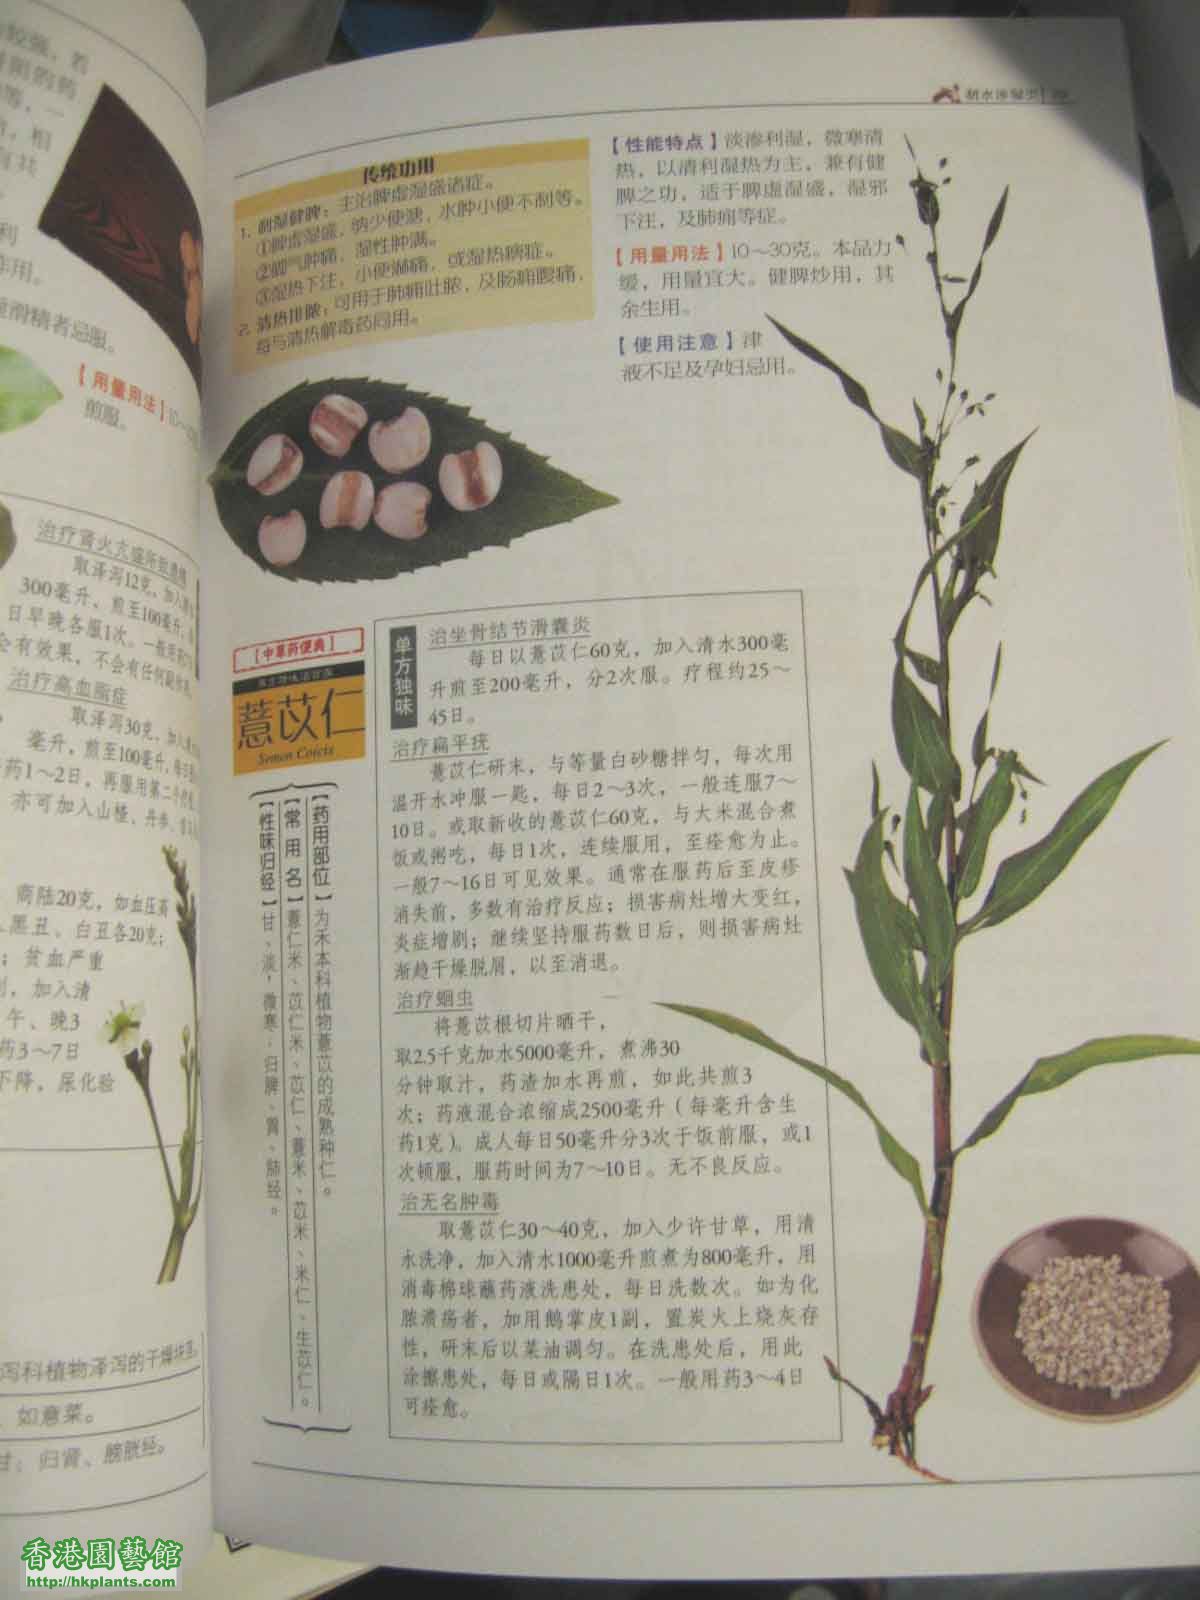 薏米植物.jpg